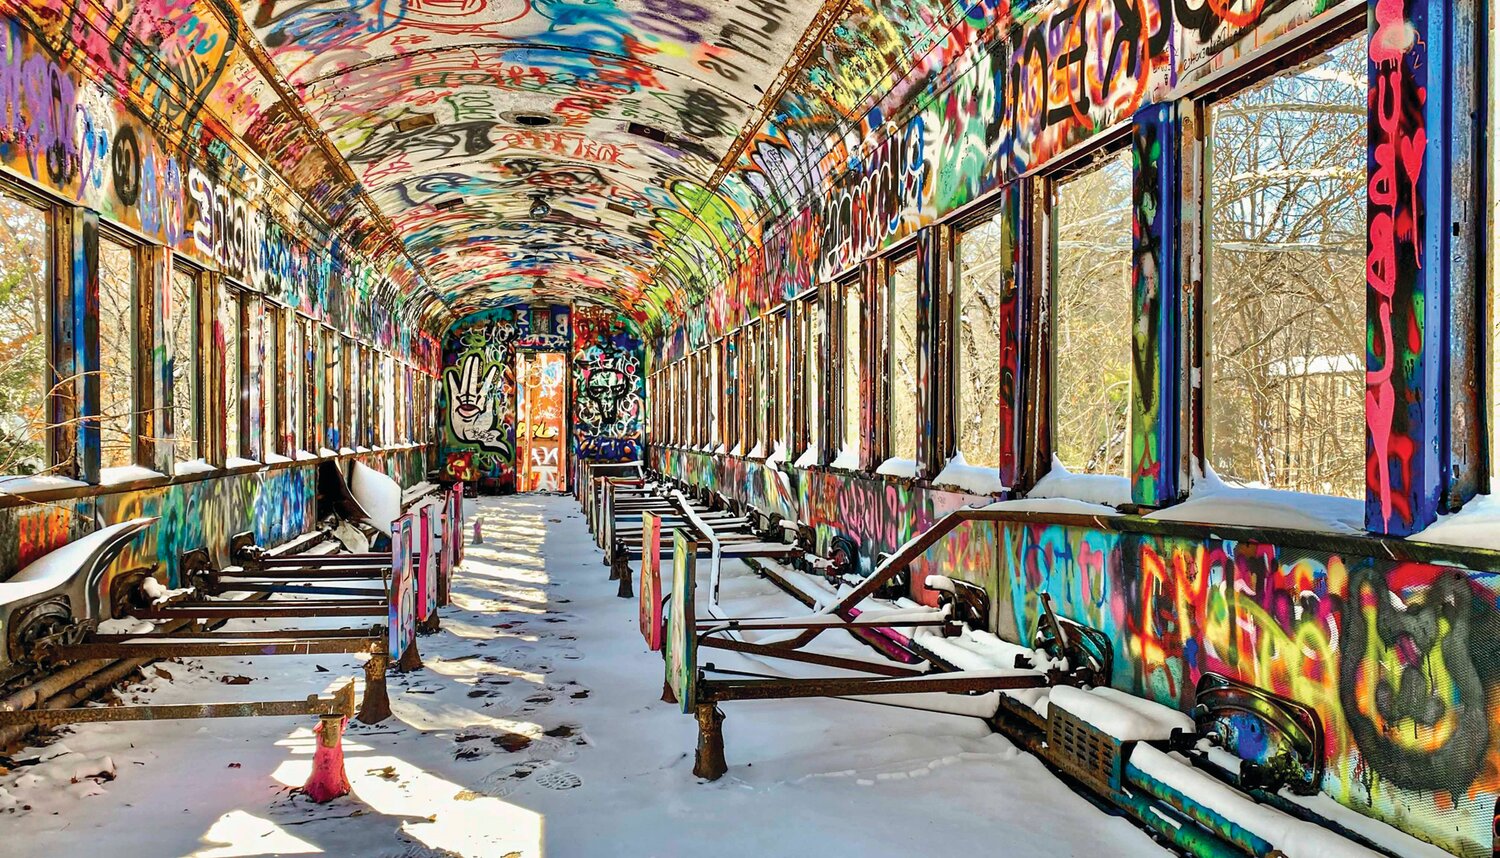 “Lambertville’s Graffiti Train” is by Stephen Harris.